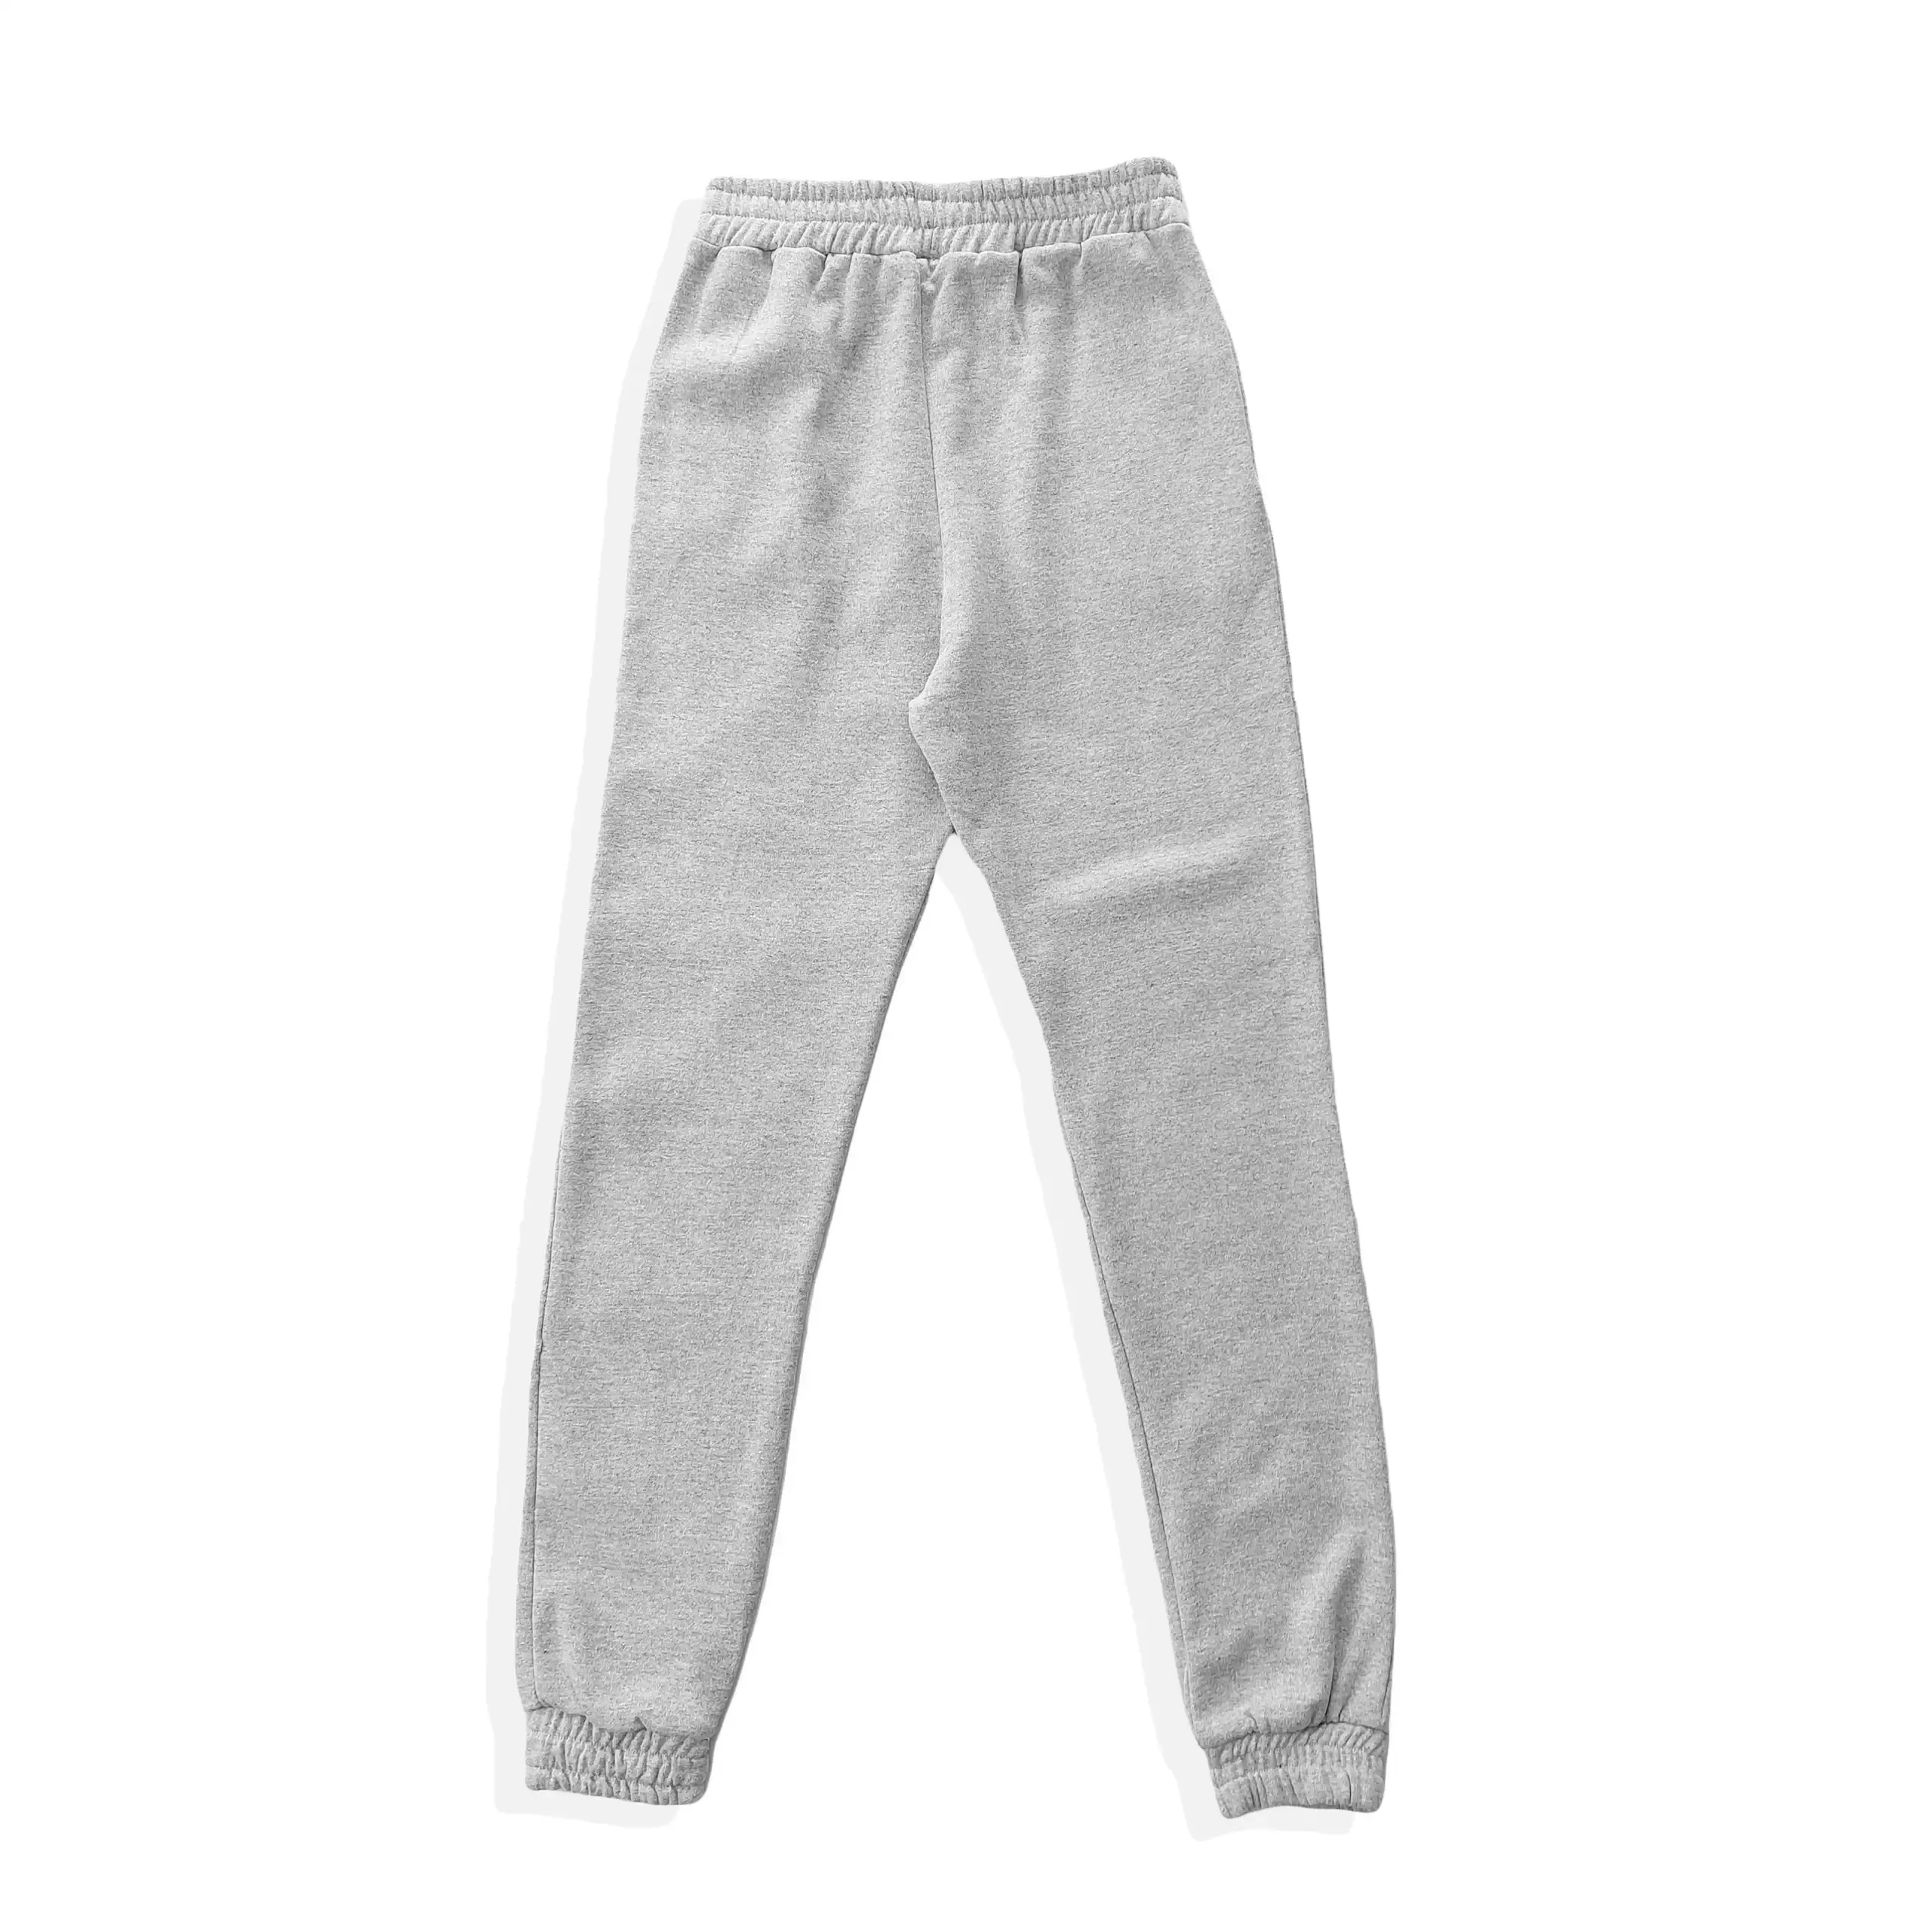 pantalon color gris